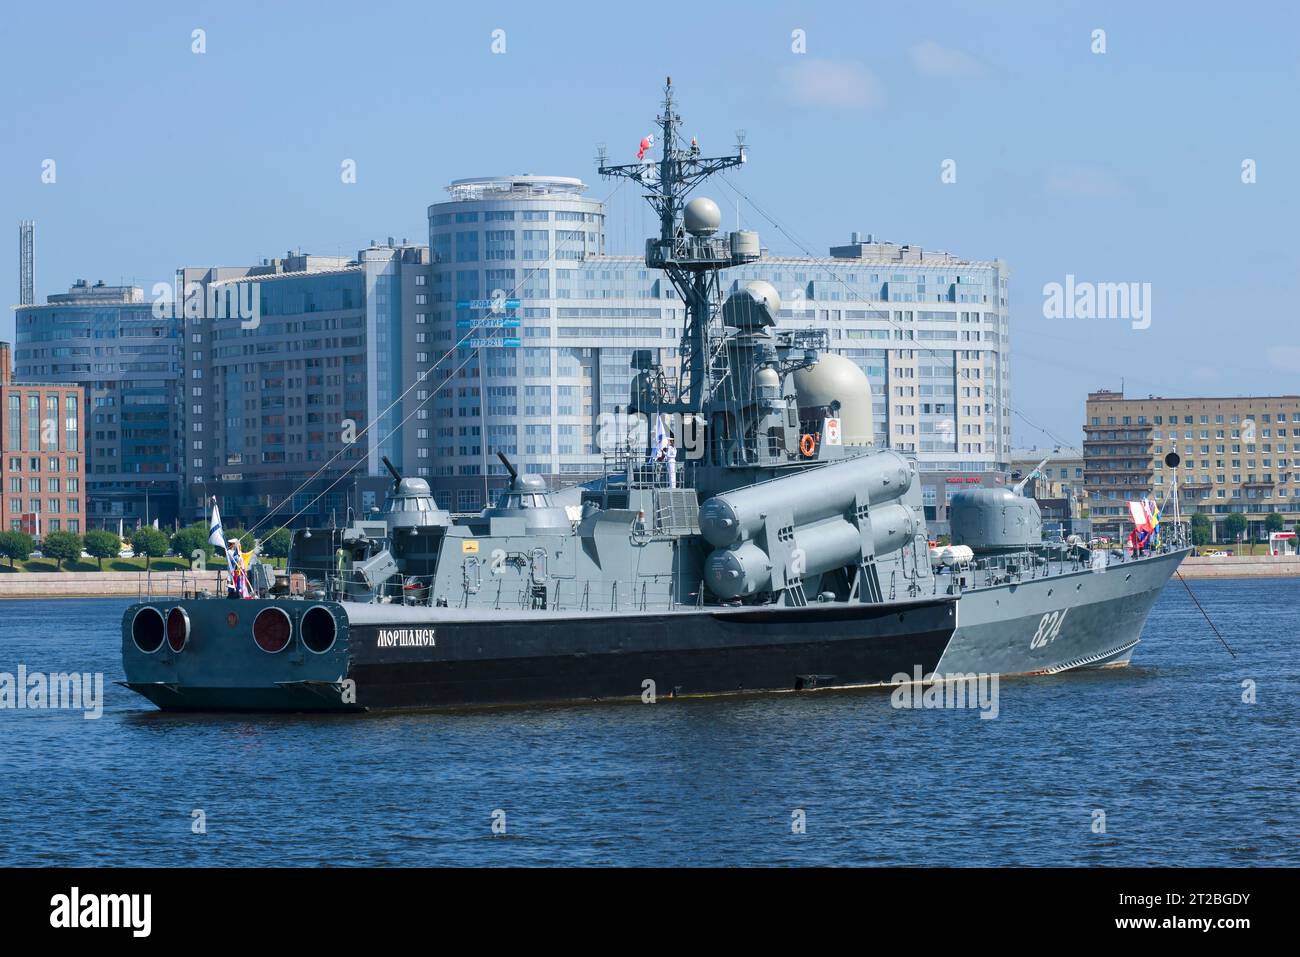 ST. PIETROBURGO, RUSSIA - 13 AGOSTO 2018: Il razzo R-293 "Morshansk" da vicino nella zona acquatica di Neva. Navy Day a St. Petersburg Foto Stock